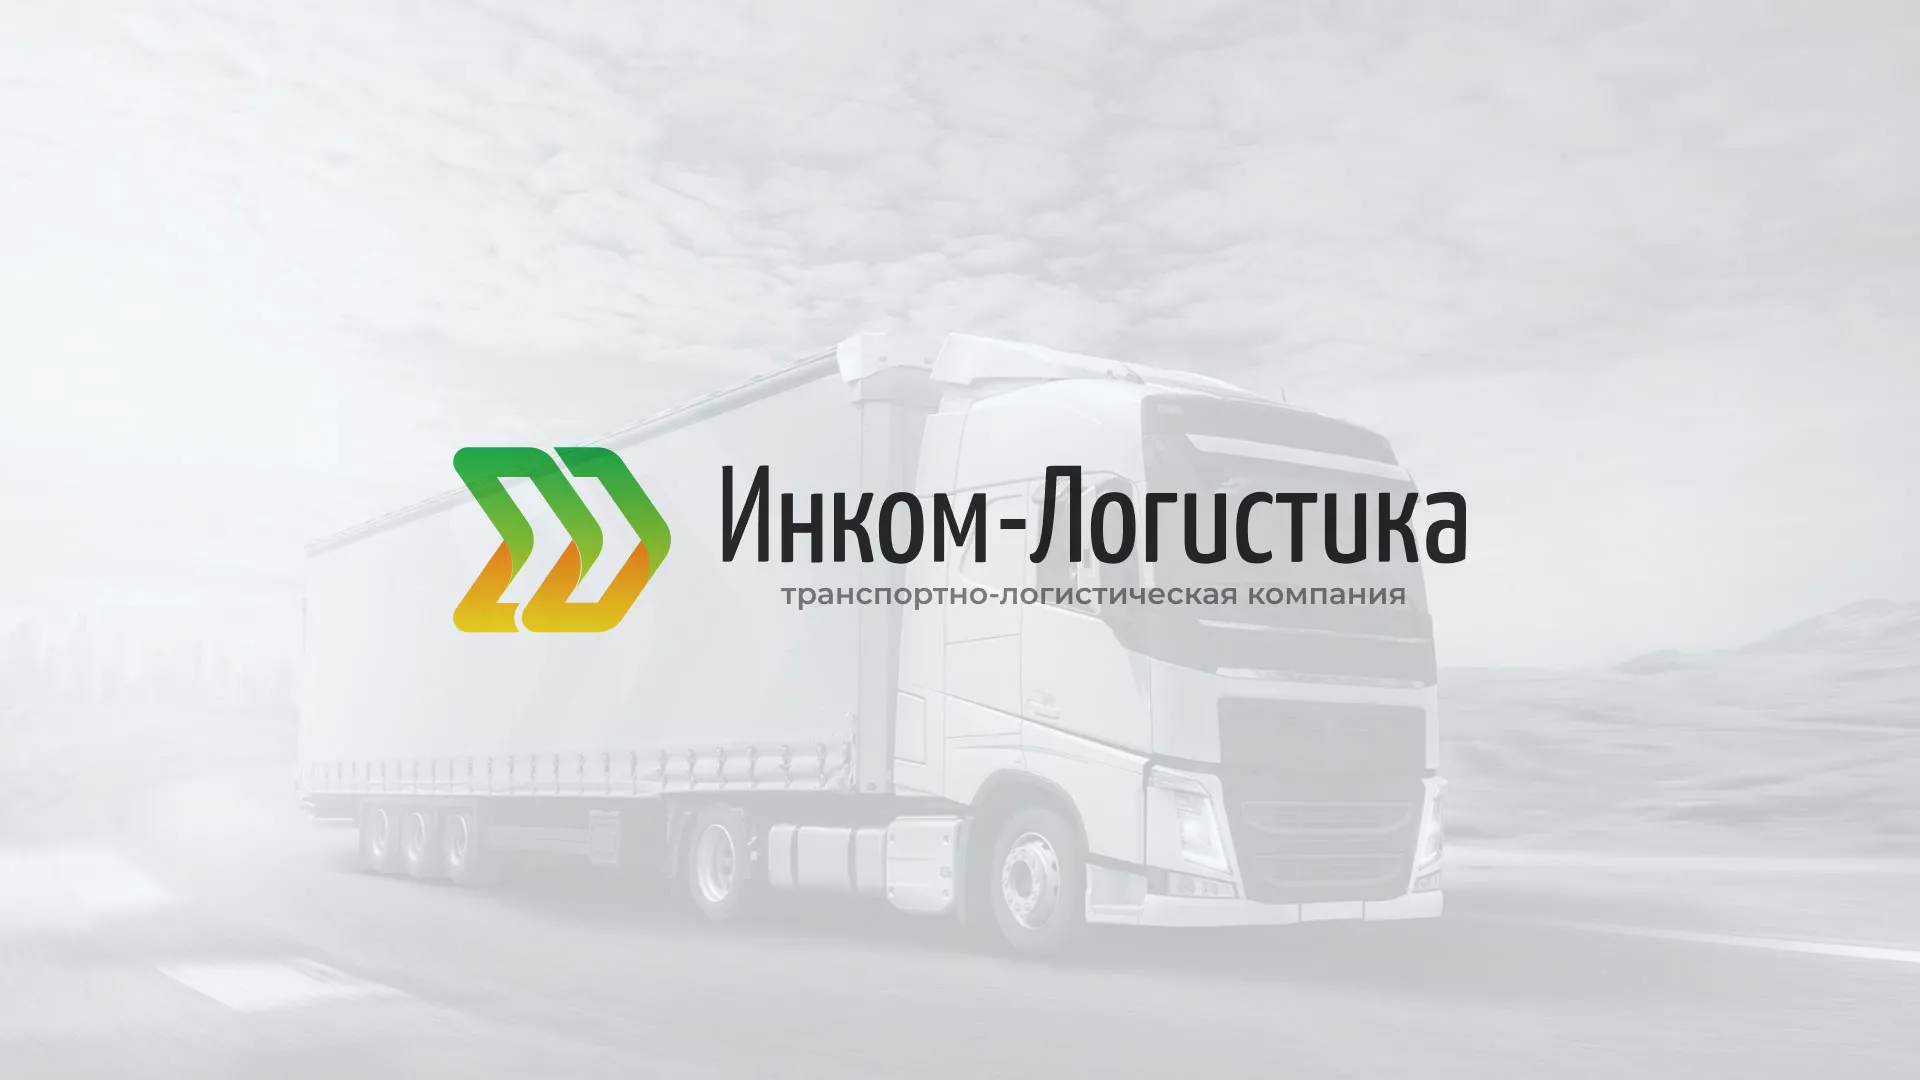 Разработка логотипа и сайта компании «Инком-Логистика» в Гусь-Хрустальном